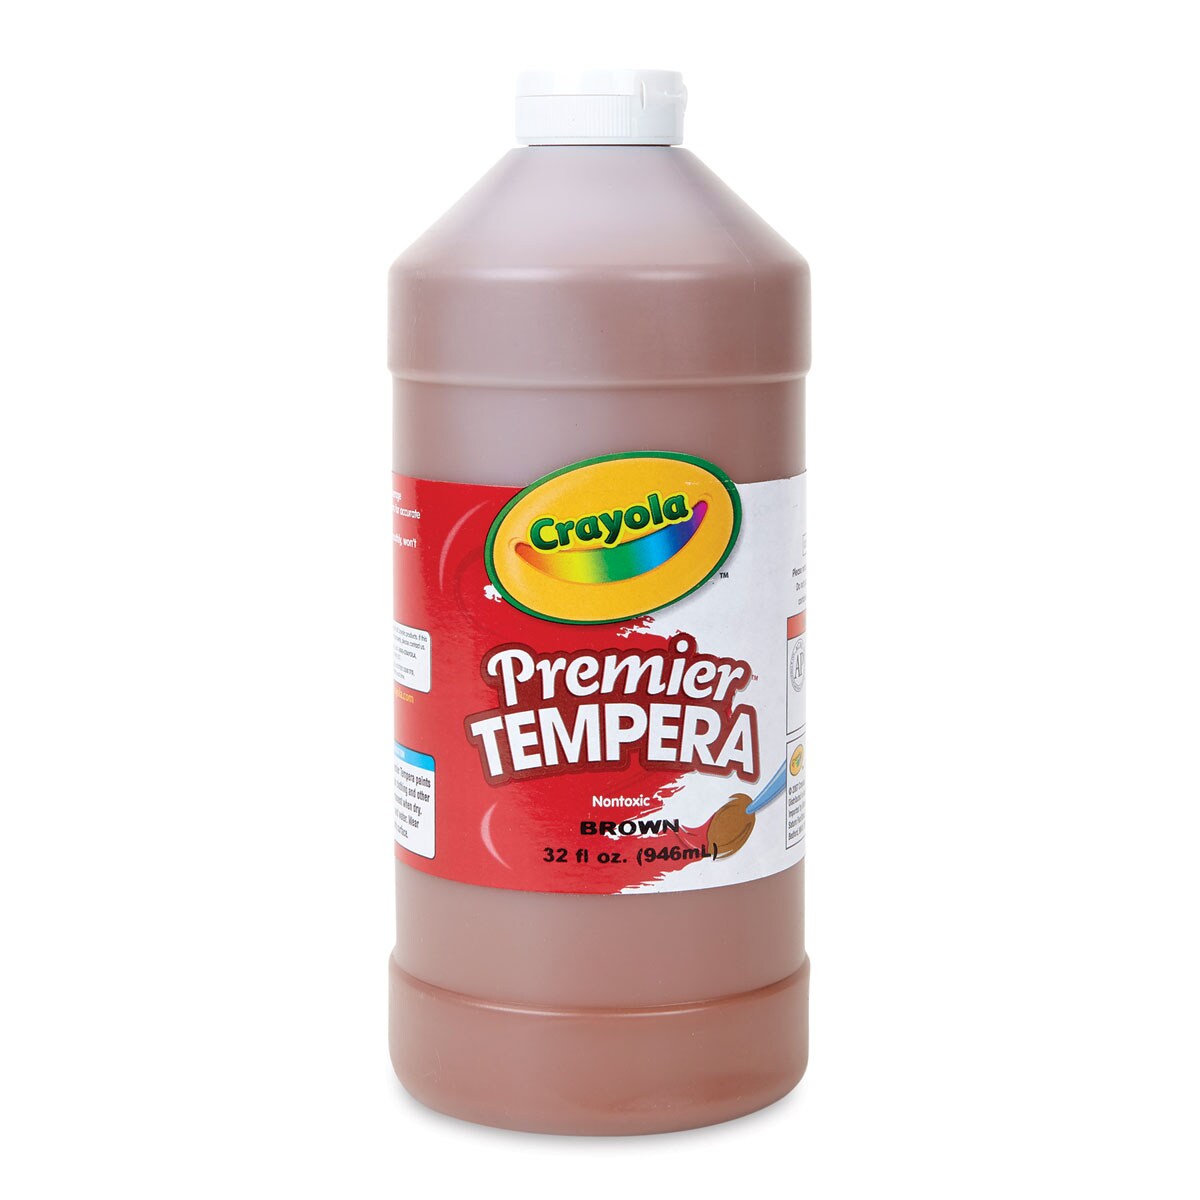 Crayola Premier Tempera - Brown, 32 oz bottle